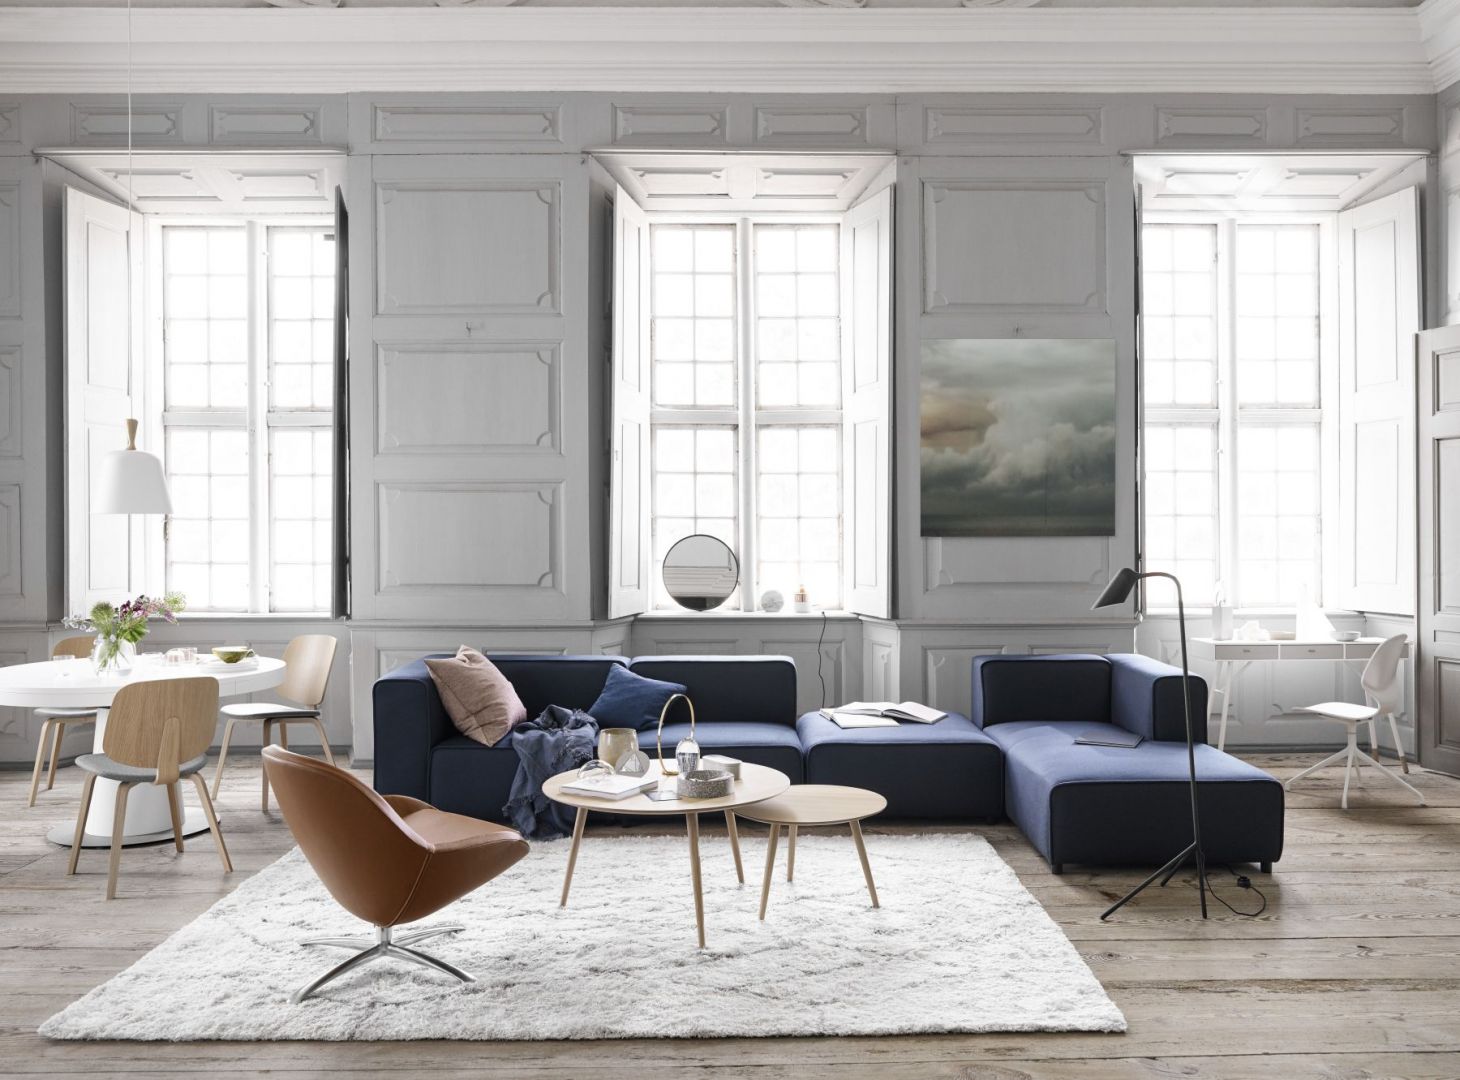 Biel jest często wybierana jako wiodący kolor podczas urządzania mieszkań w Skandynawii. Optycznie powiększa przestrzeń oraz nadaje jej świeżości. Fot. BoConcept